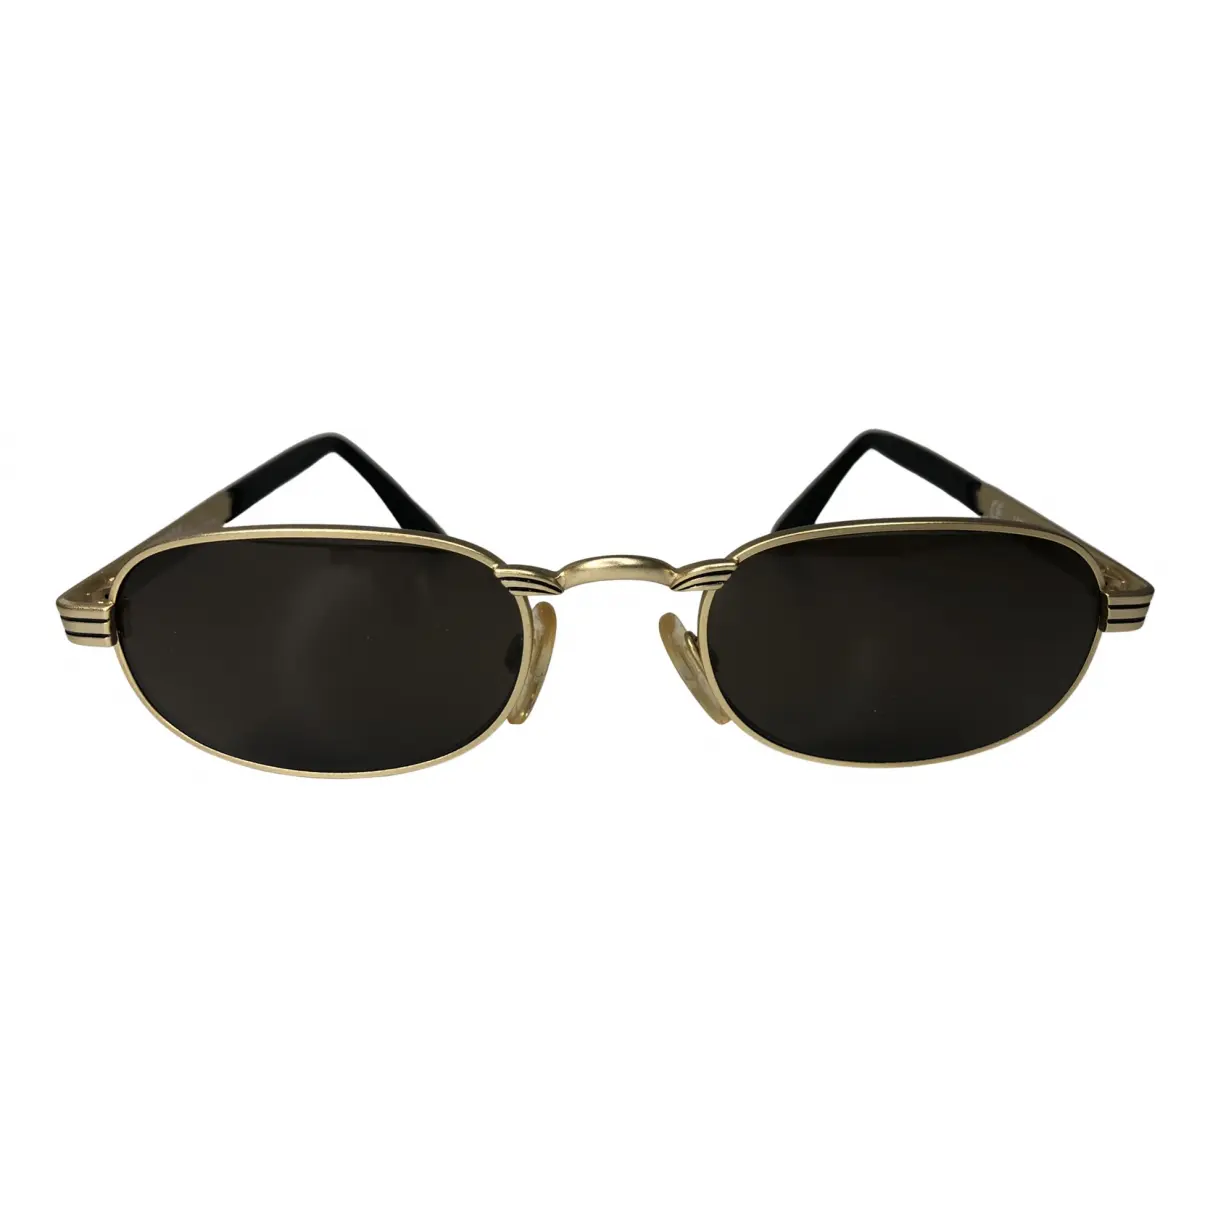 Sunglasses Versus - Vintage